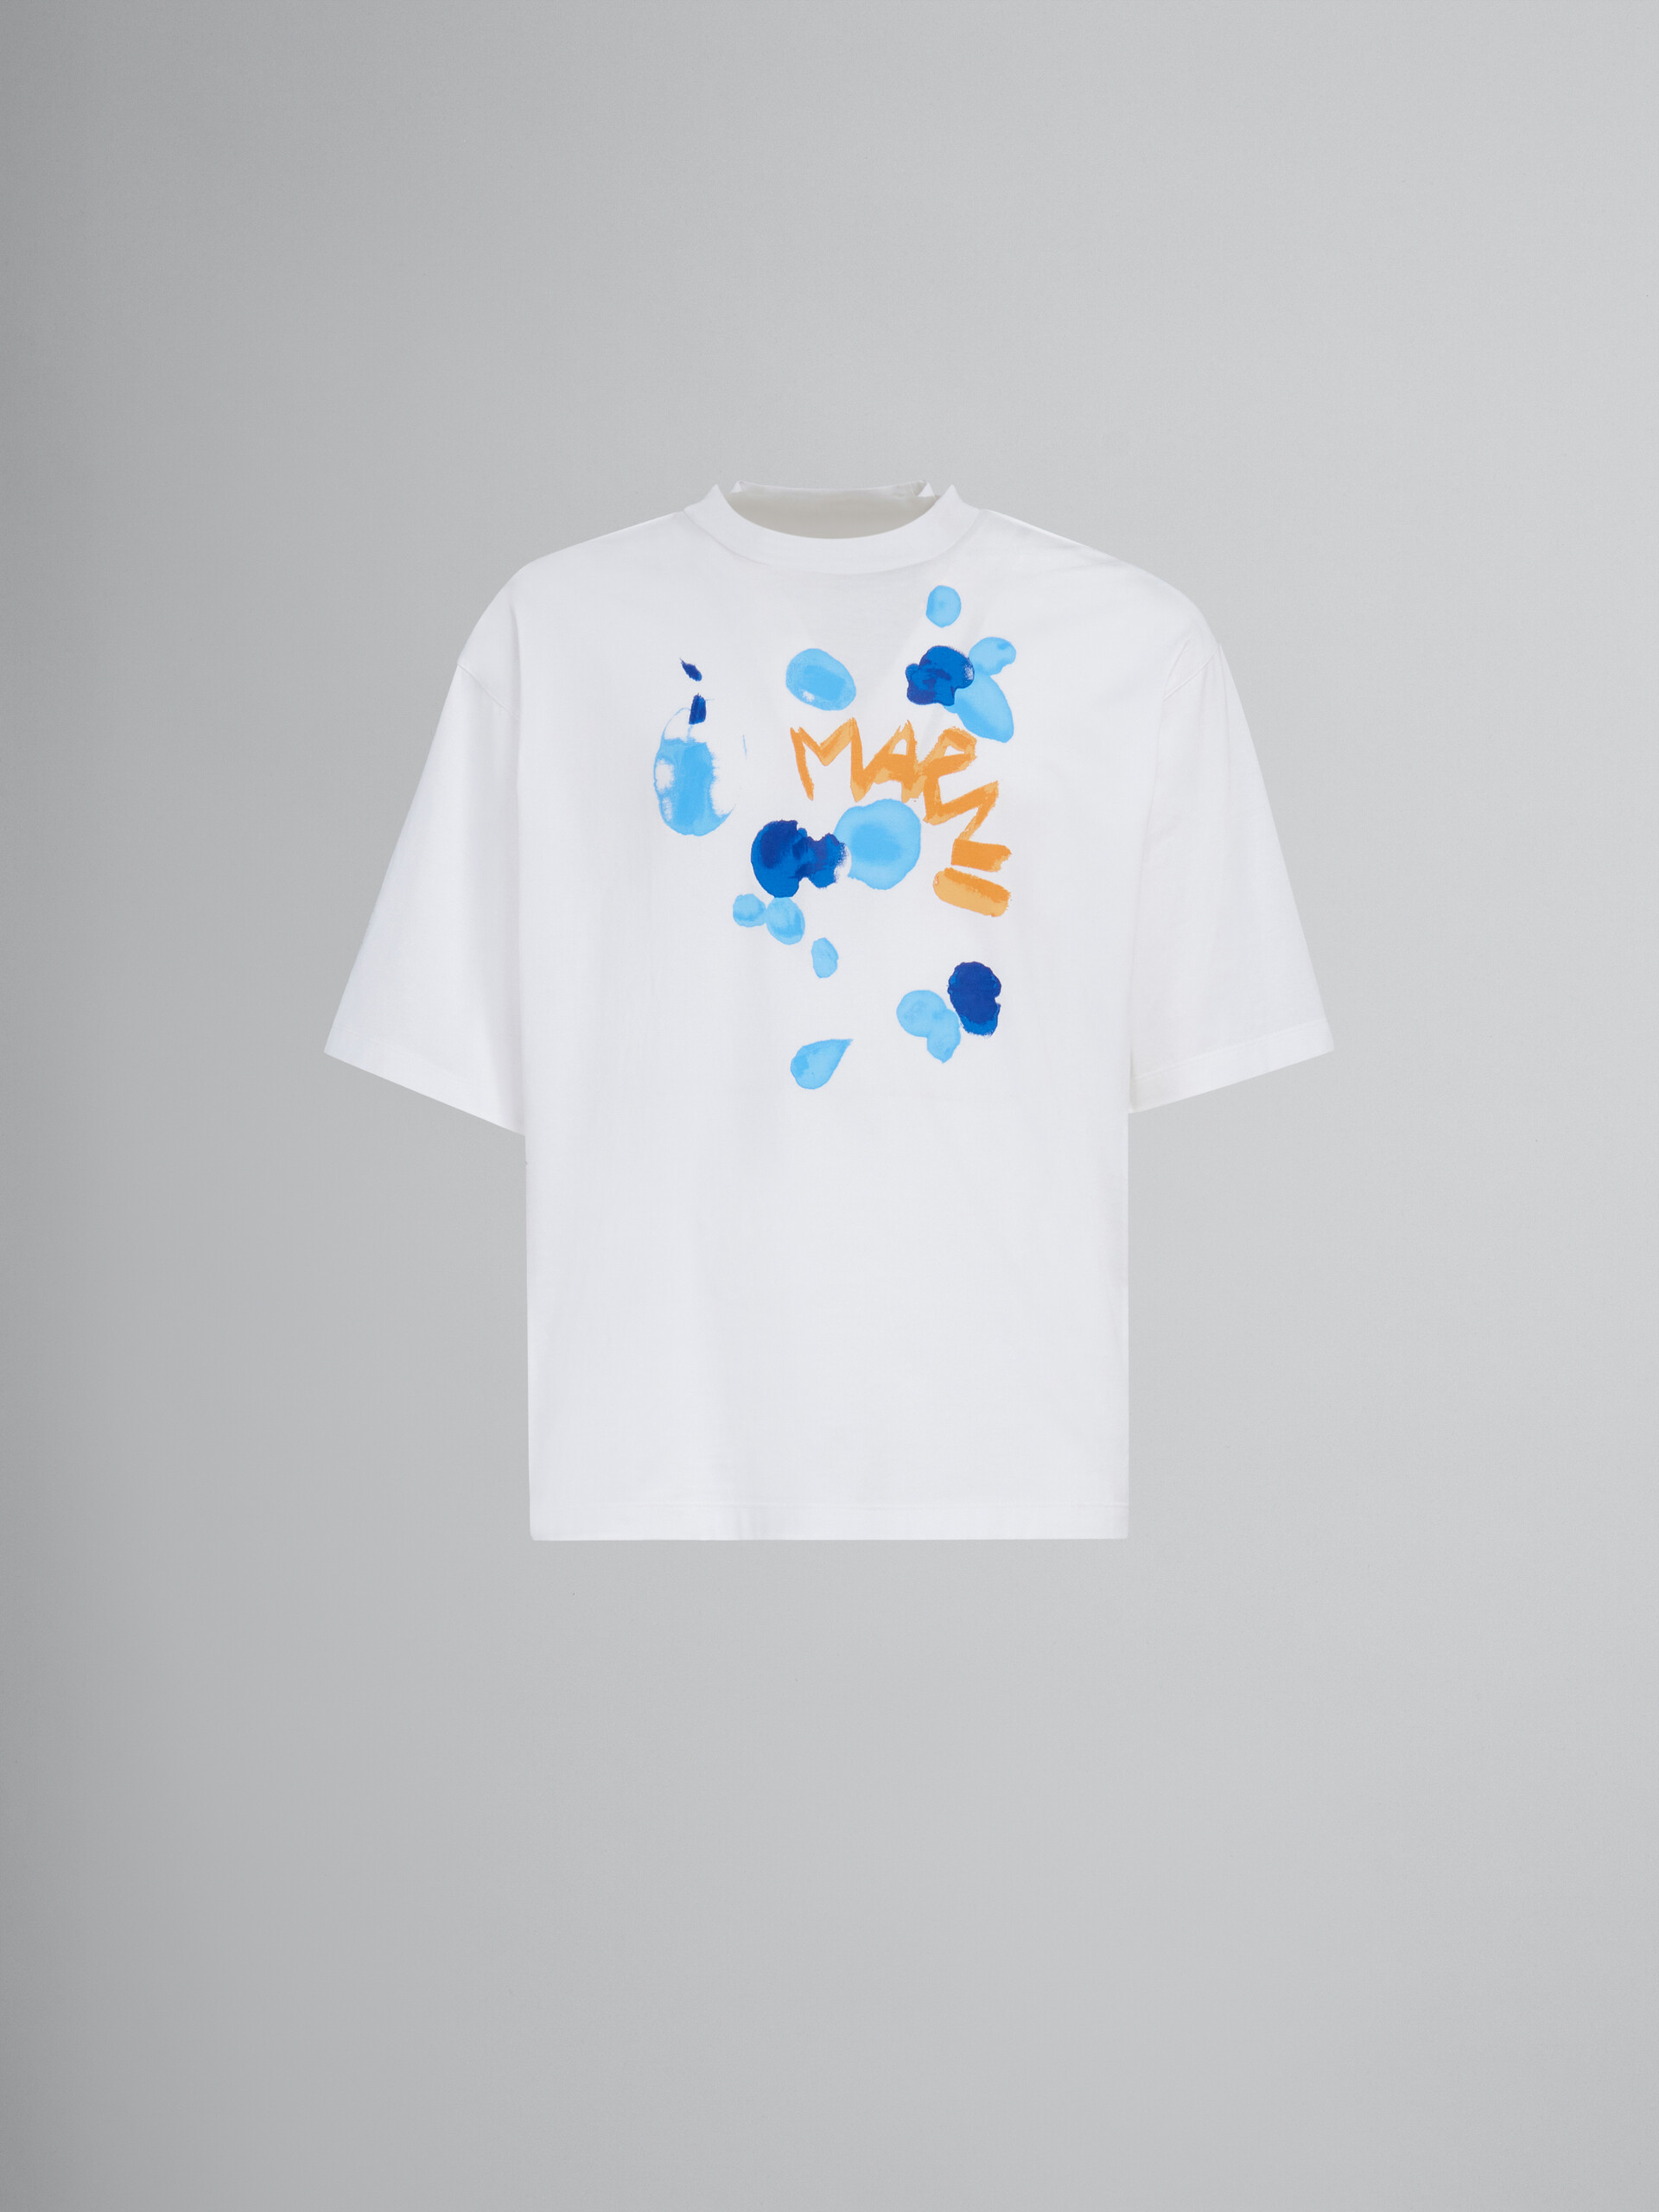 T-shirt en coton biologique blanc avec imprimé Marni Dripping - T-shirts - Image 1